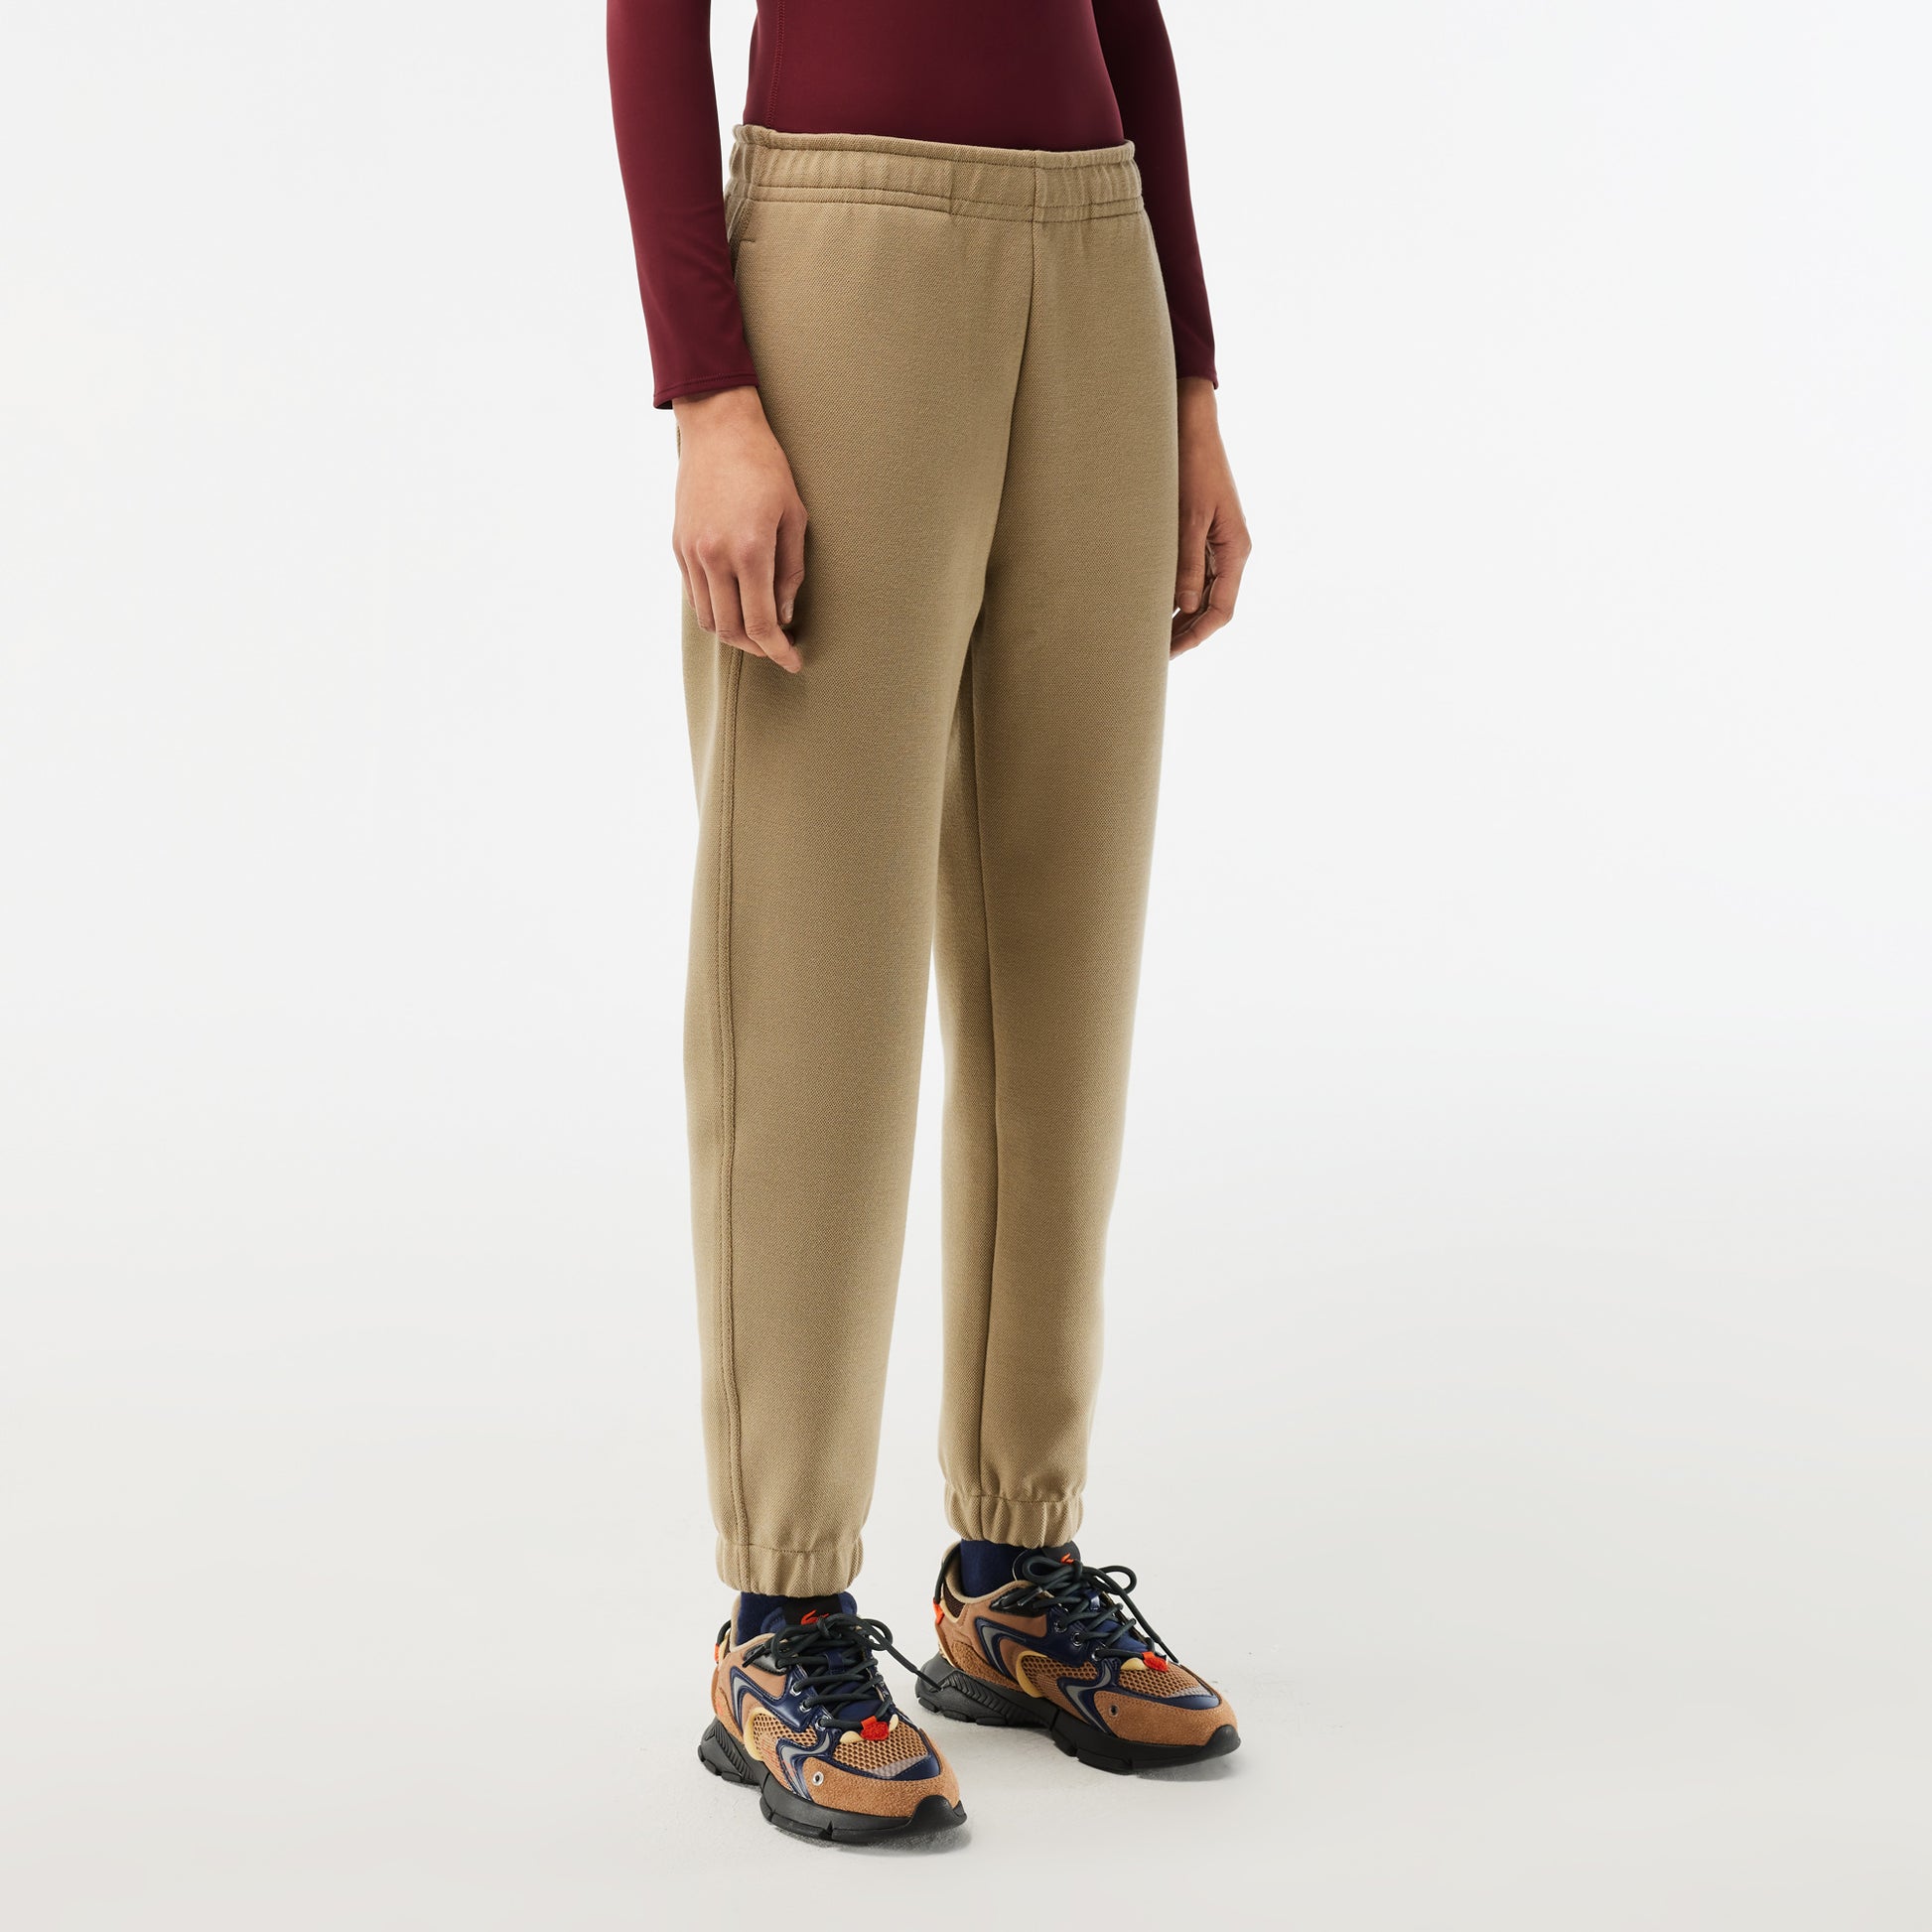 Women's Blended Cotton Jogging Pants